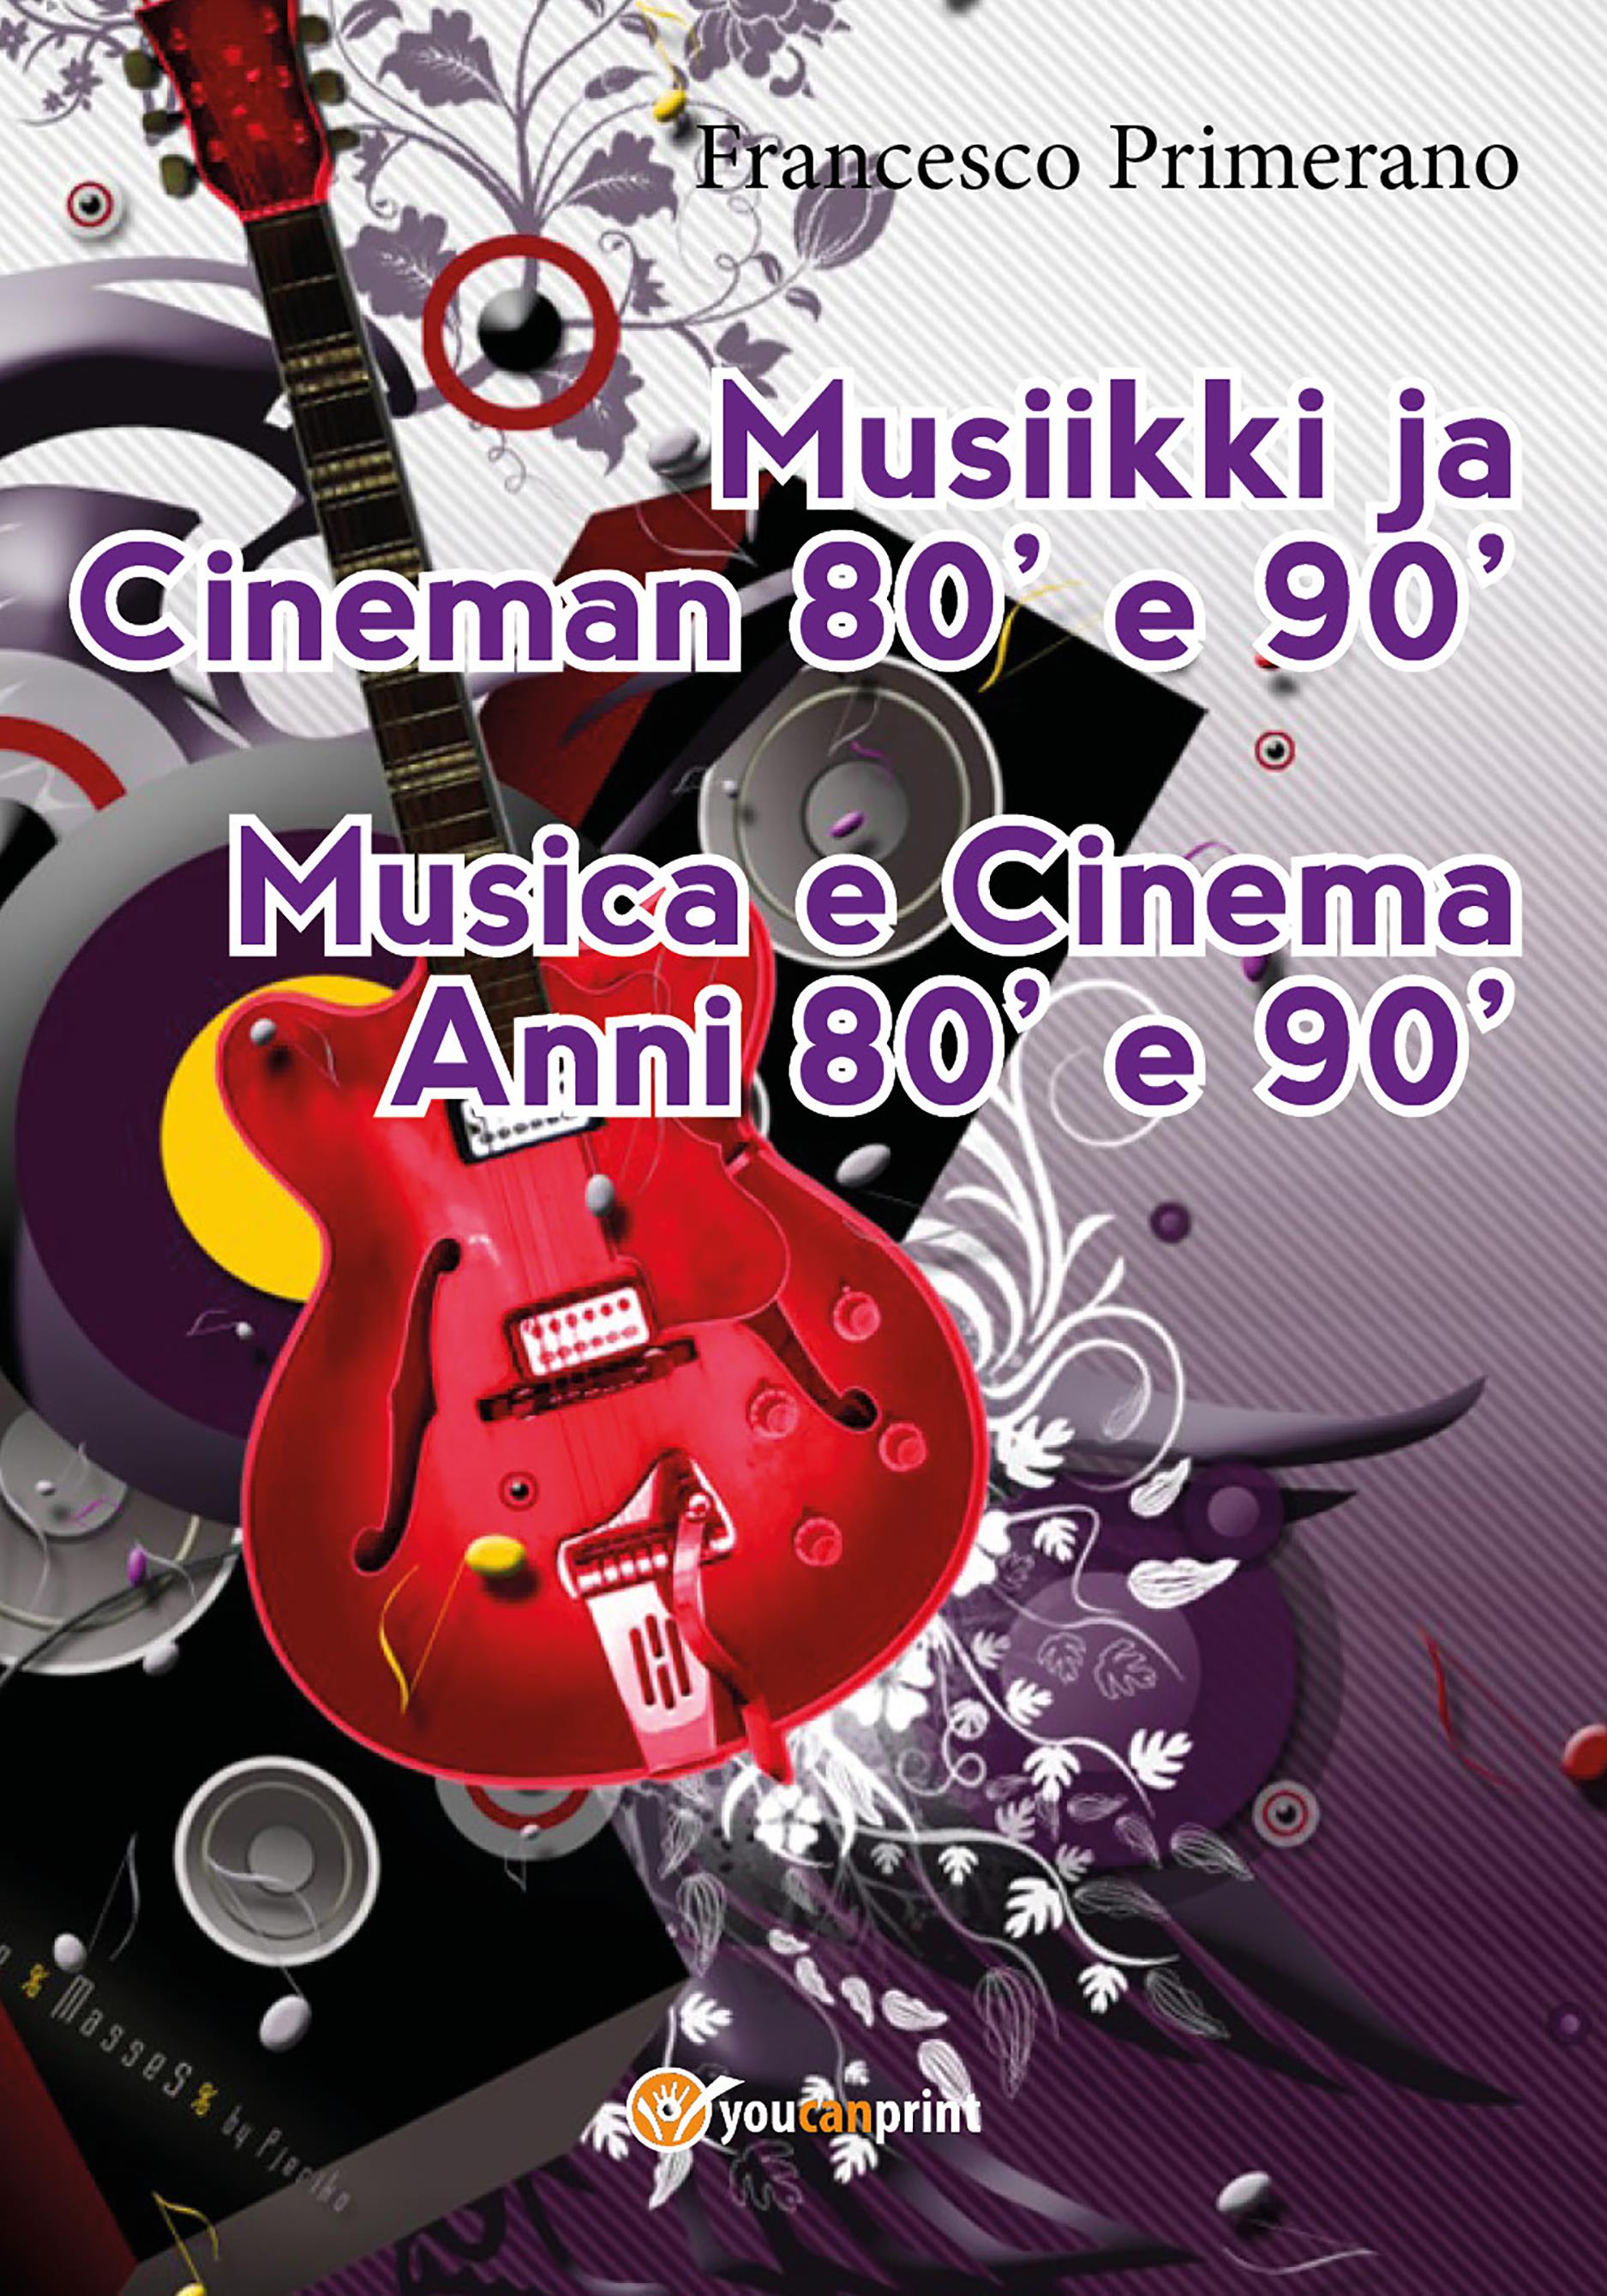 Musiikki ja Cineman 80' e 90'